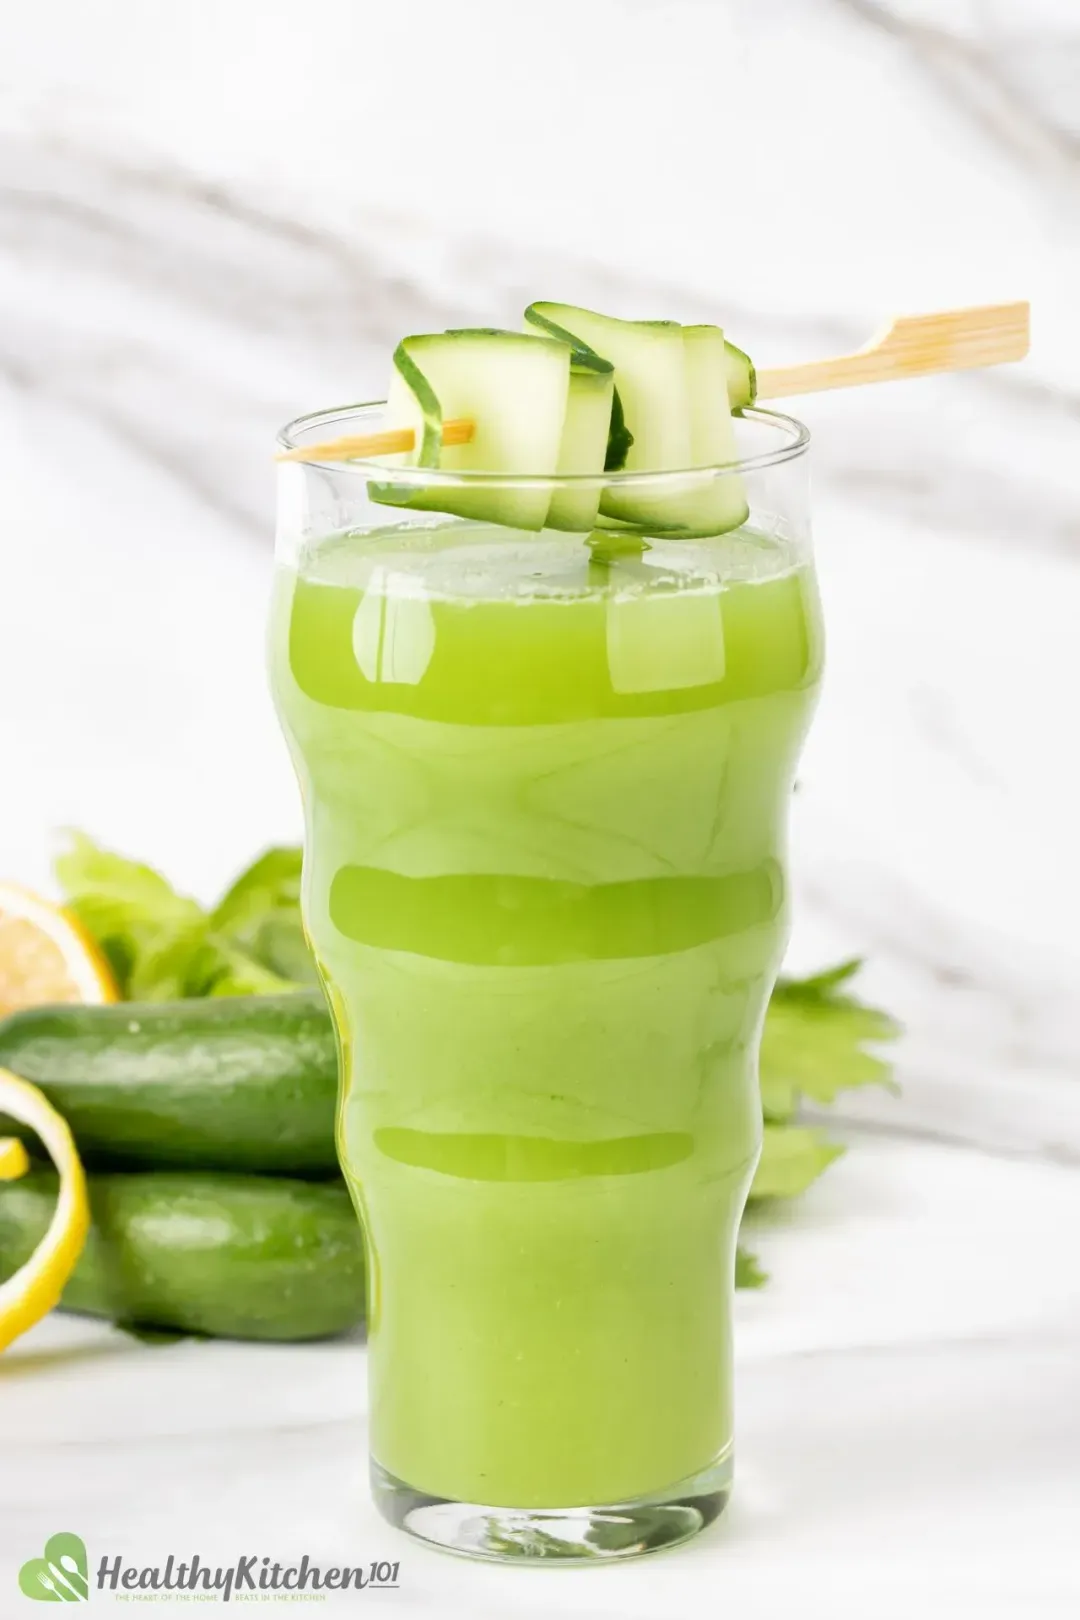 Cucumber Celery Juice Recipe Healthykitchen101 4